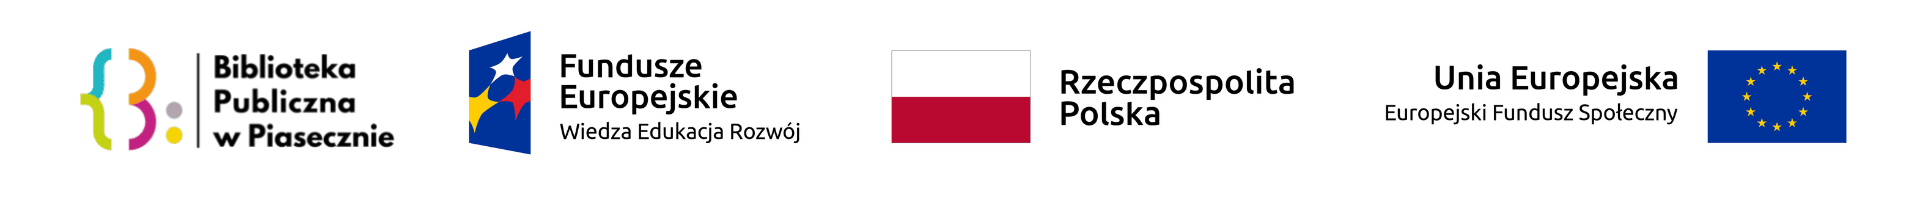 Logotypy projektu w kolejności: Logo biblioteki,, Unii Europejskiej i Polski